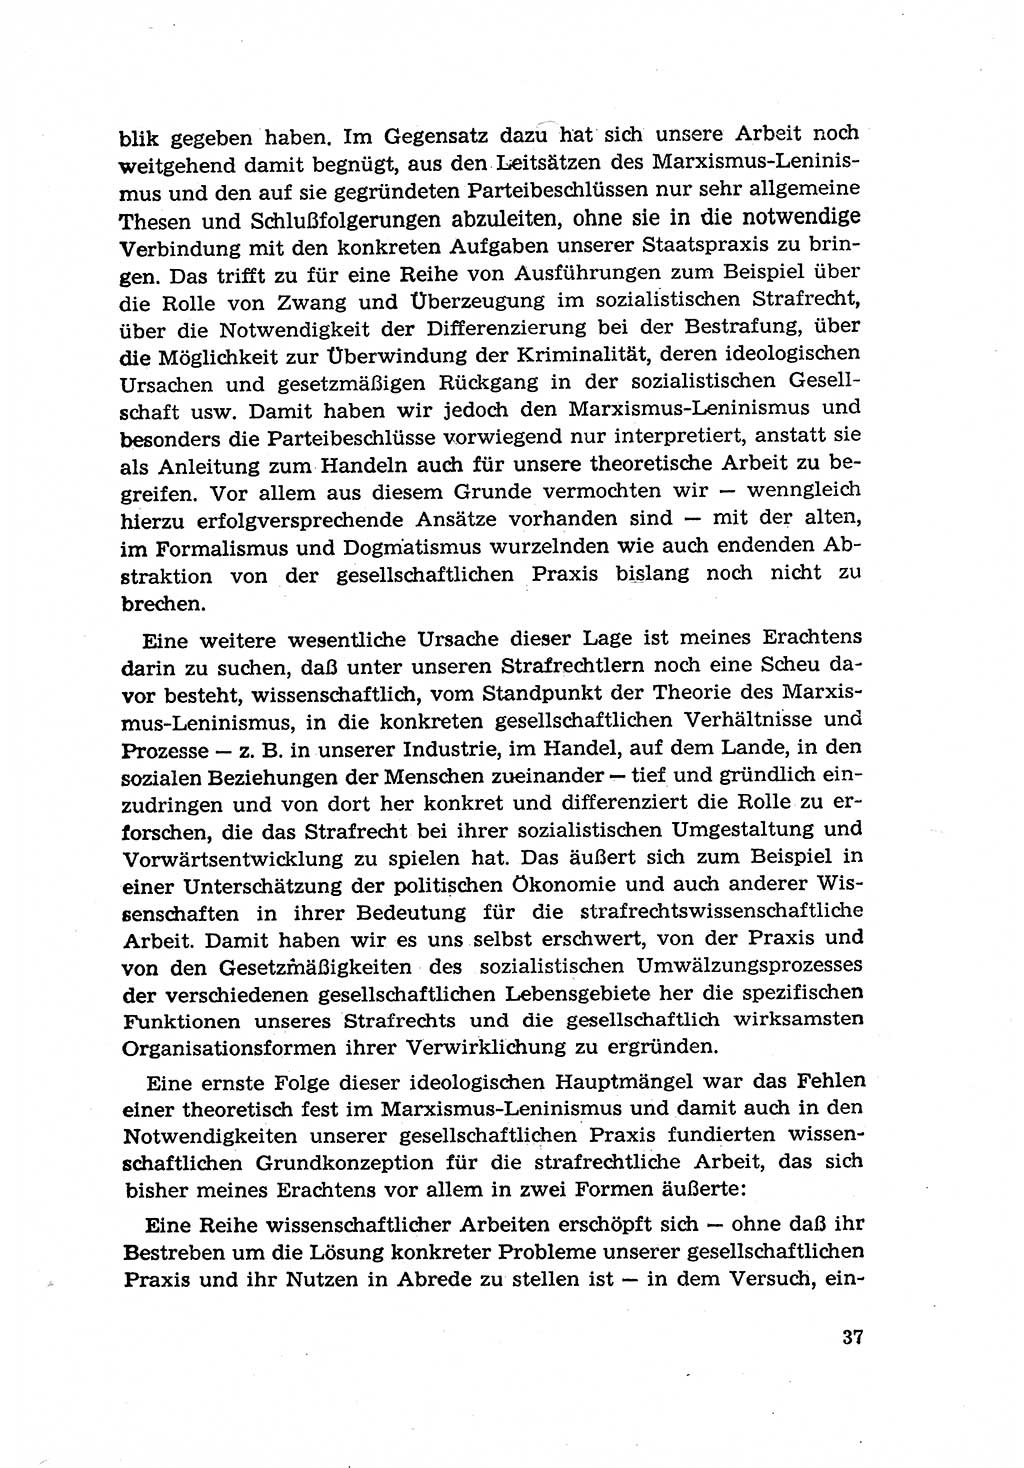 Zur Entwicklung des sozialistischen Strafrechts der Deutschen Demokratischen Republik (DDR) 1960, Seite 37 (Entw. soz. Strafr. DDR 1960, S. 37)